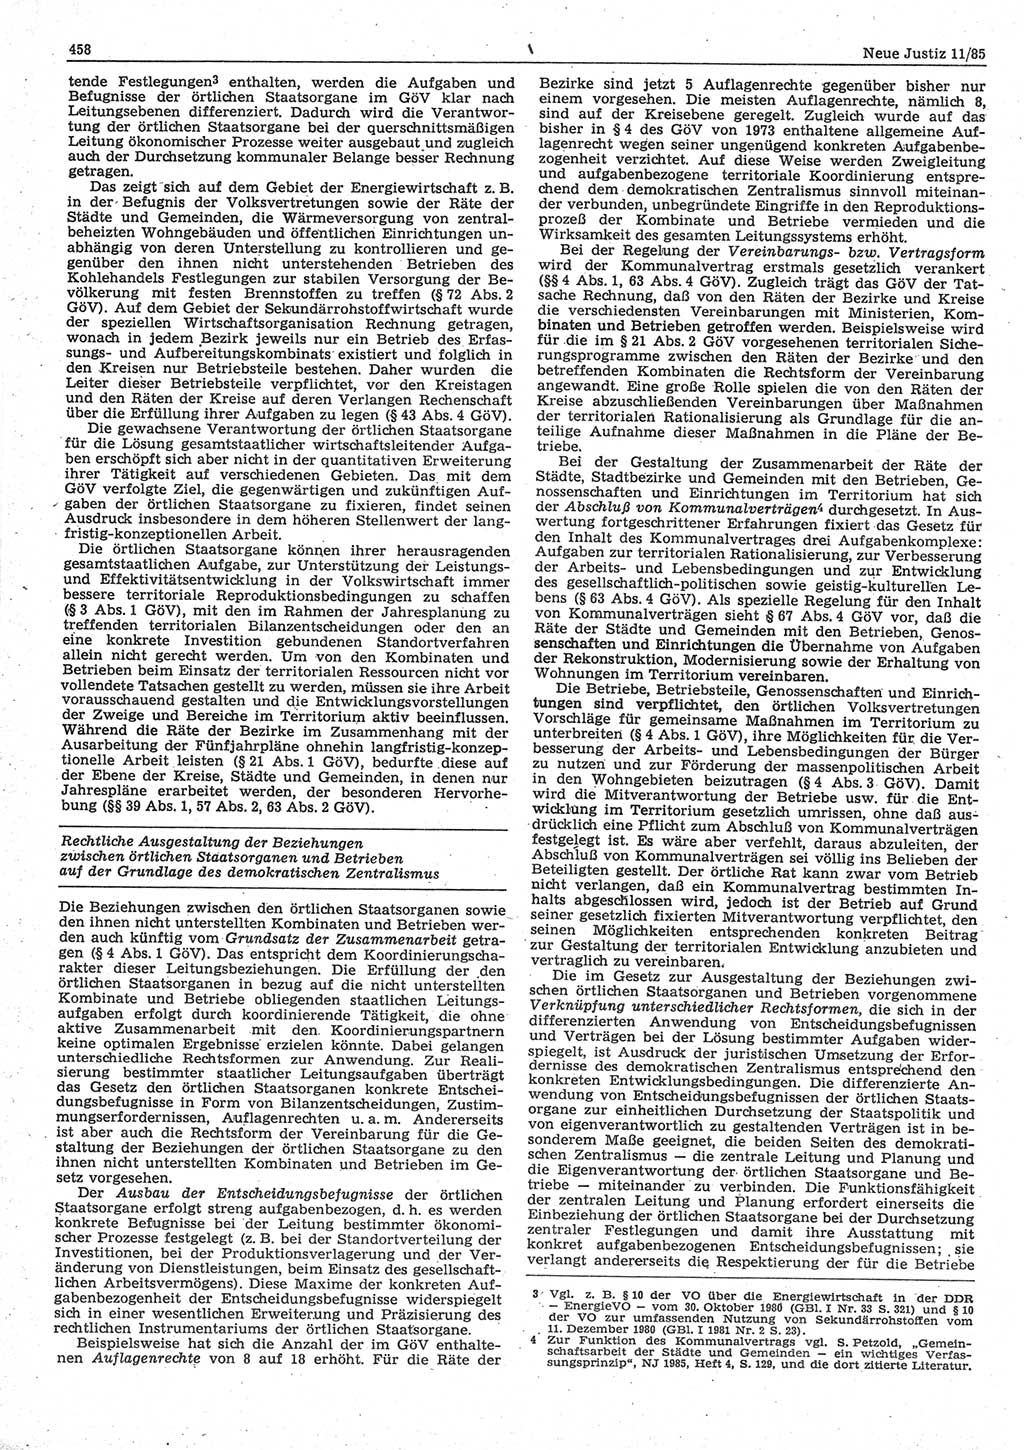 Neue Justiz (NJ), Zeitschrift für sozialistisches Recht und Gesetzlichkeit [Deutsche Demokratische Republik (DDR)], 39. Jahrgang 1985, Seite 458 (NJ DDR 1985, S. 458)